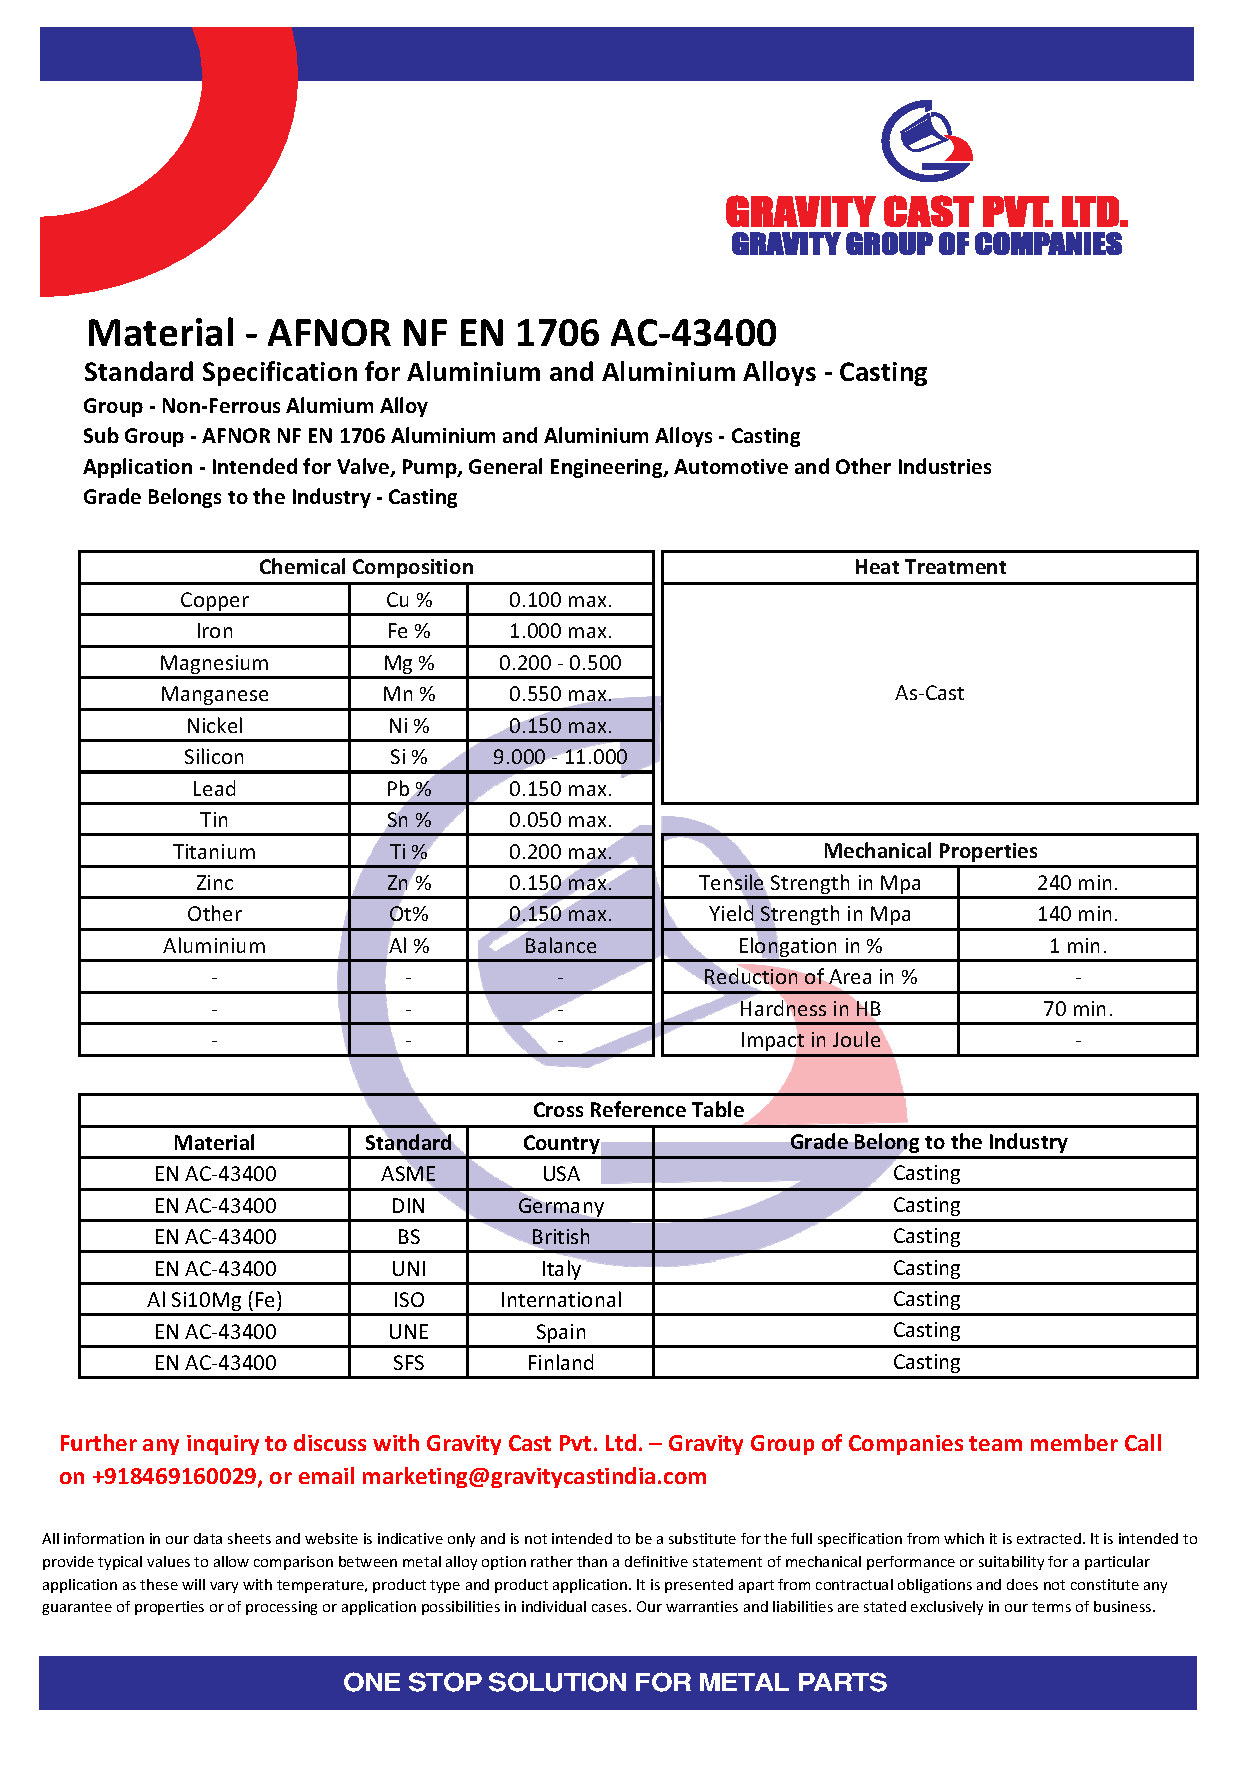 AFNOR NF EN 1706 AC-43400.pdf